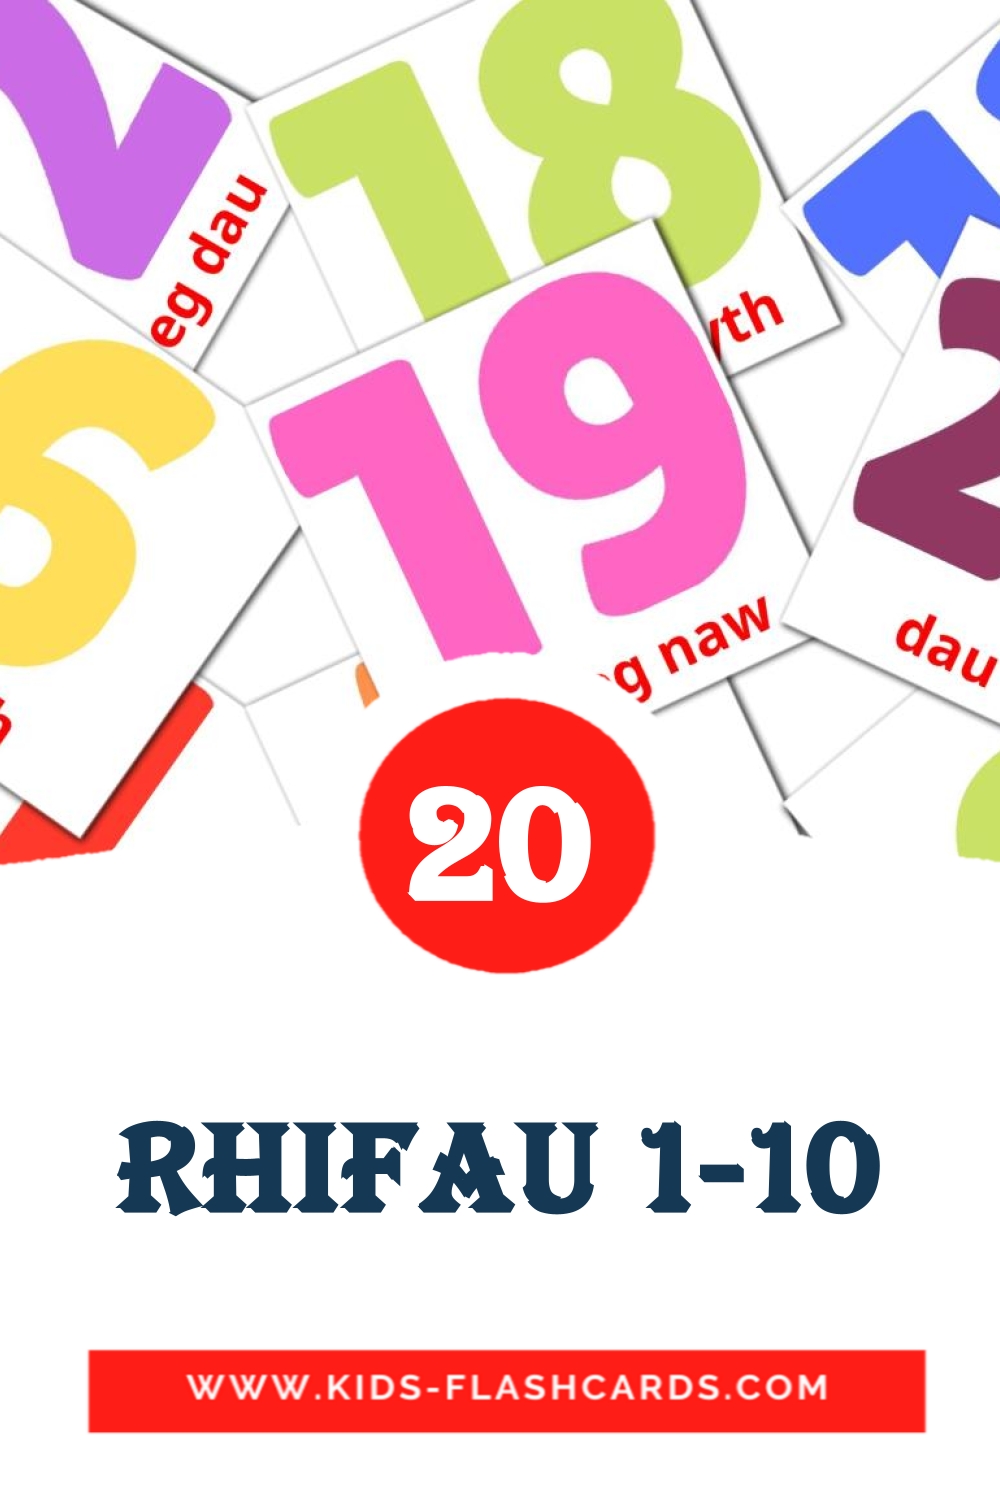 20 Cartões com Imagens de Rhifau 1-10 para Jardim de Infância em welsh